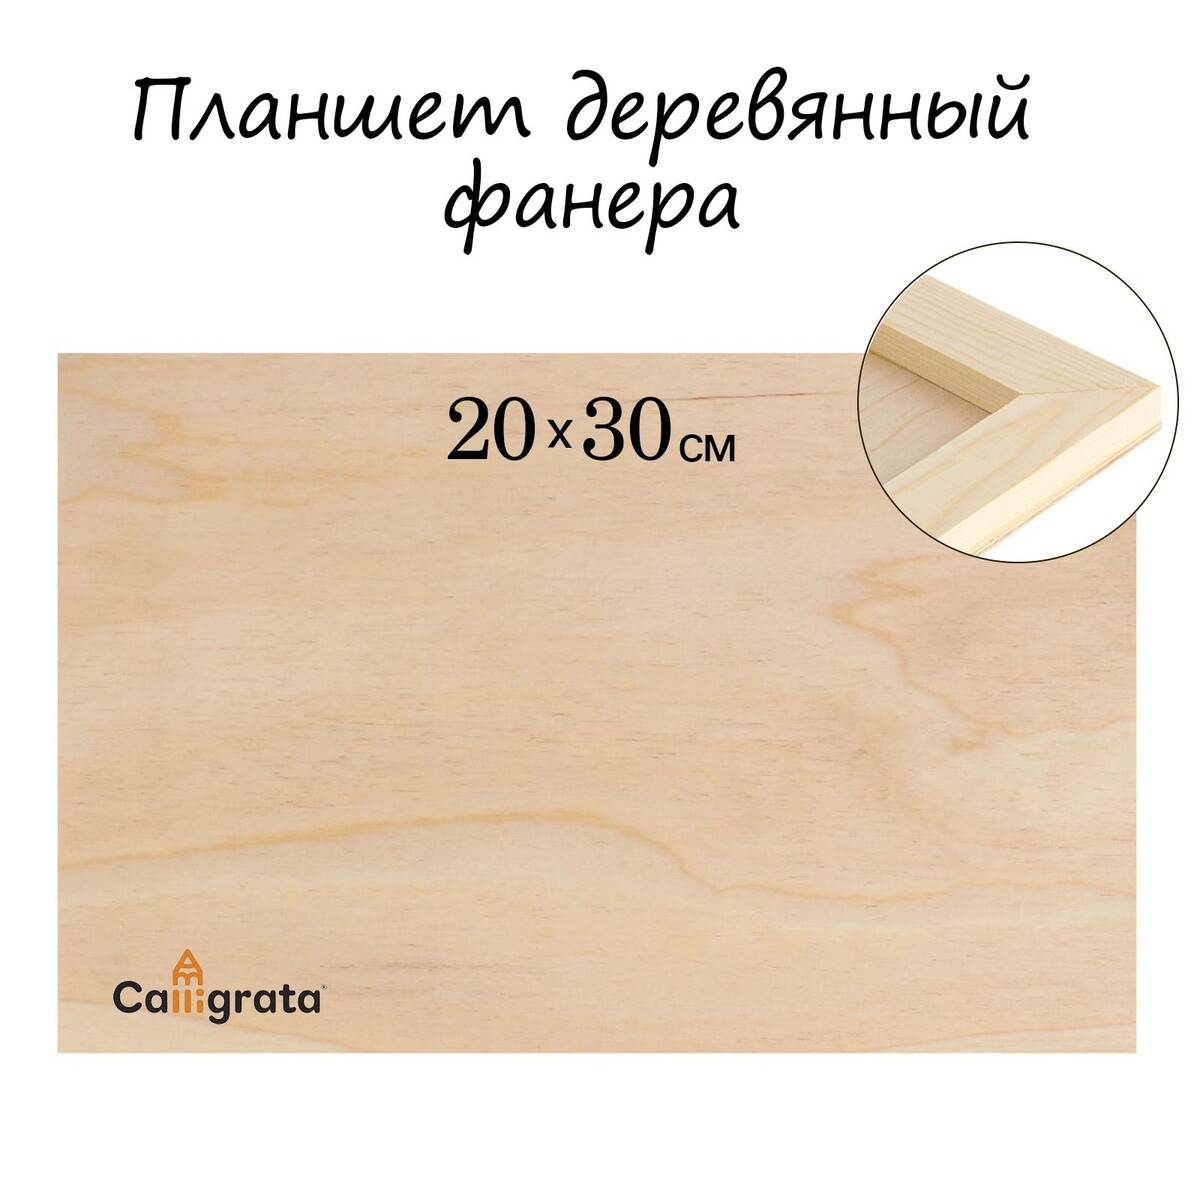 Планшет деревянный 20 х 30 х 2 см, фанера планшет деревянный 30 х 40 х 2 см двп